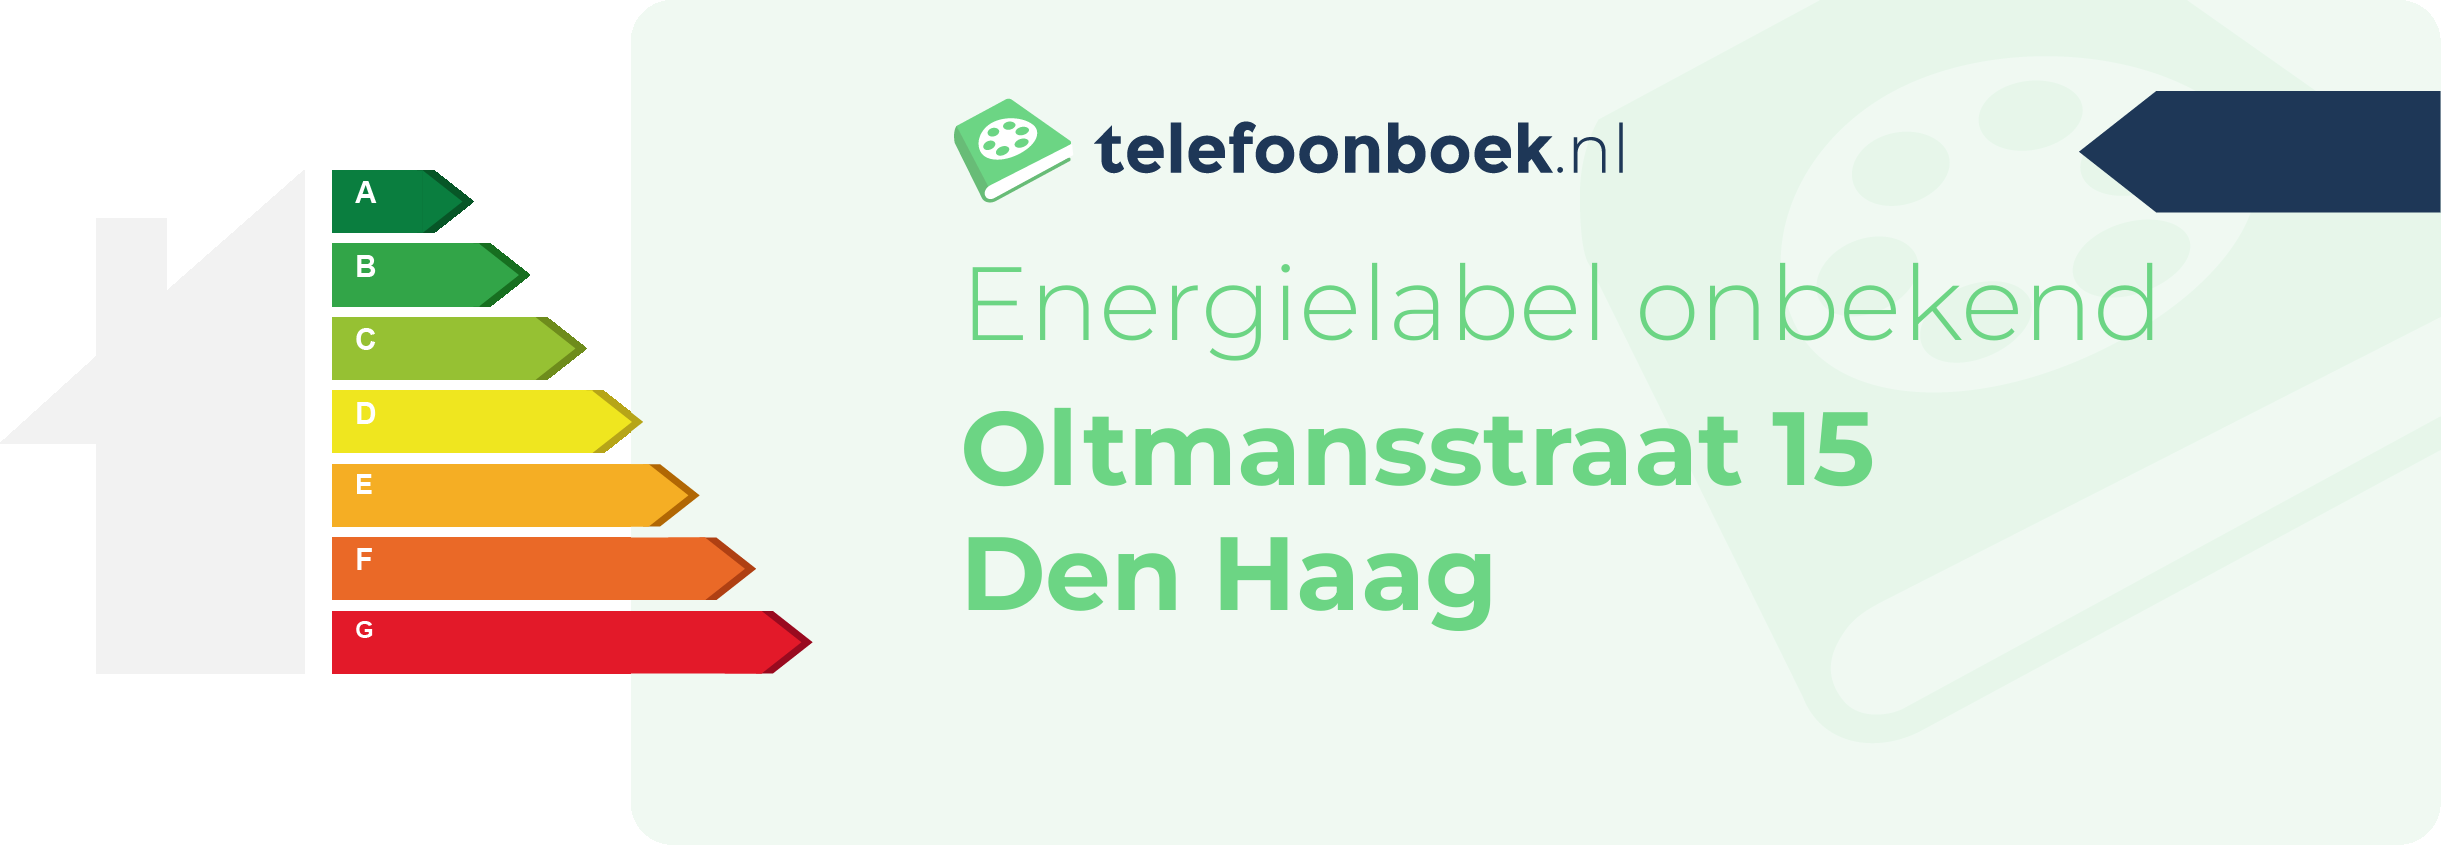 Energielabel Oltmansstraat 15 Den Haag